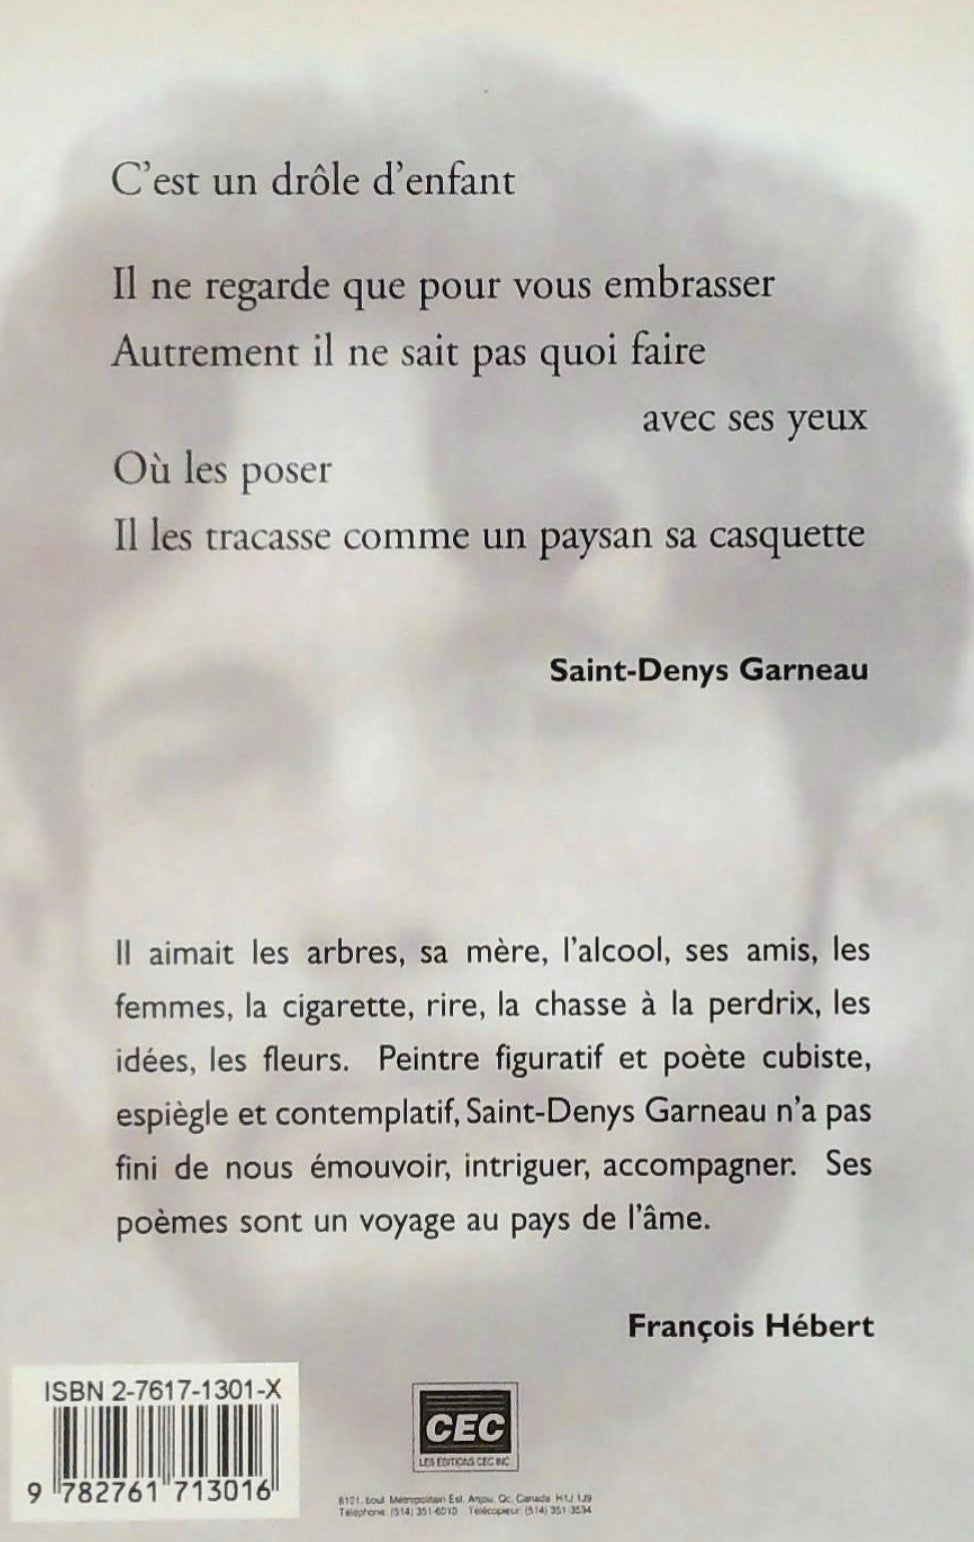 Grands textes : Regards et jeux dans l'espace (Saint-Denys Garneau)